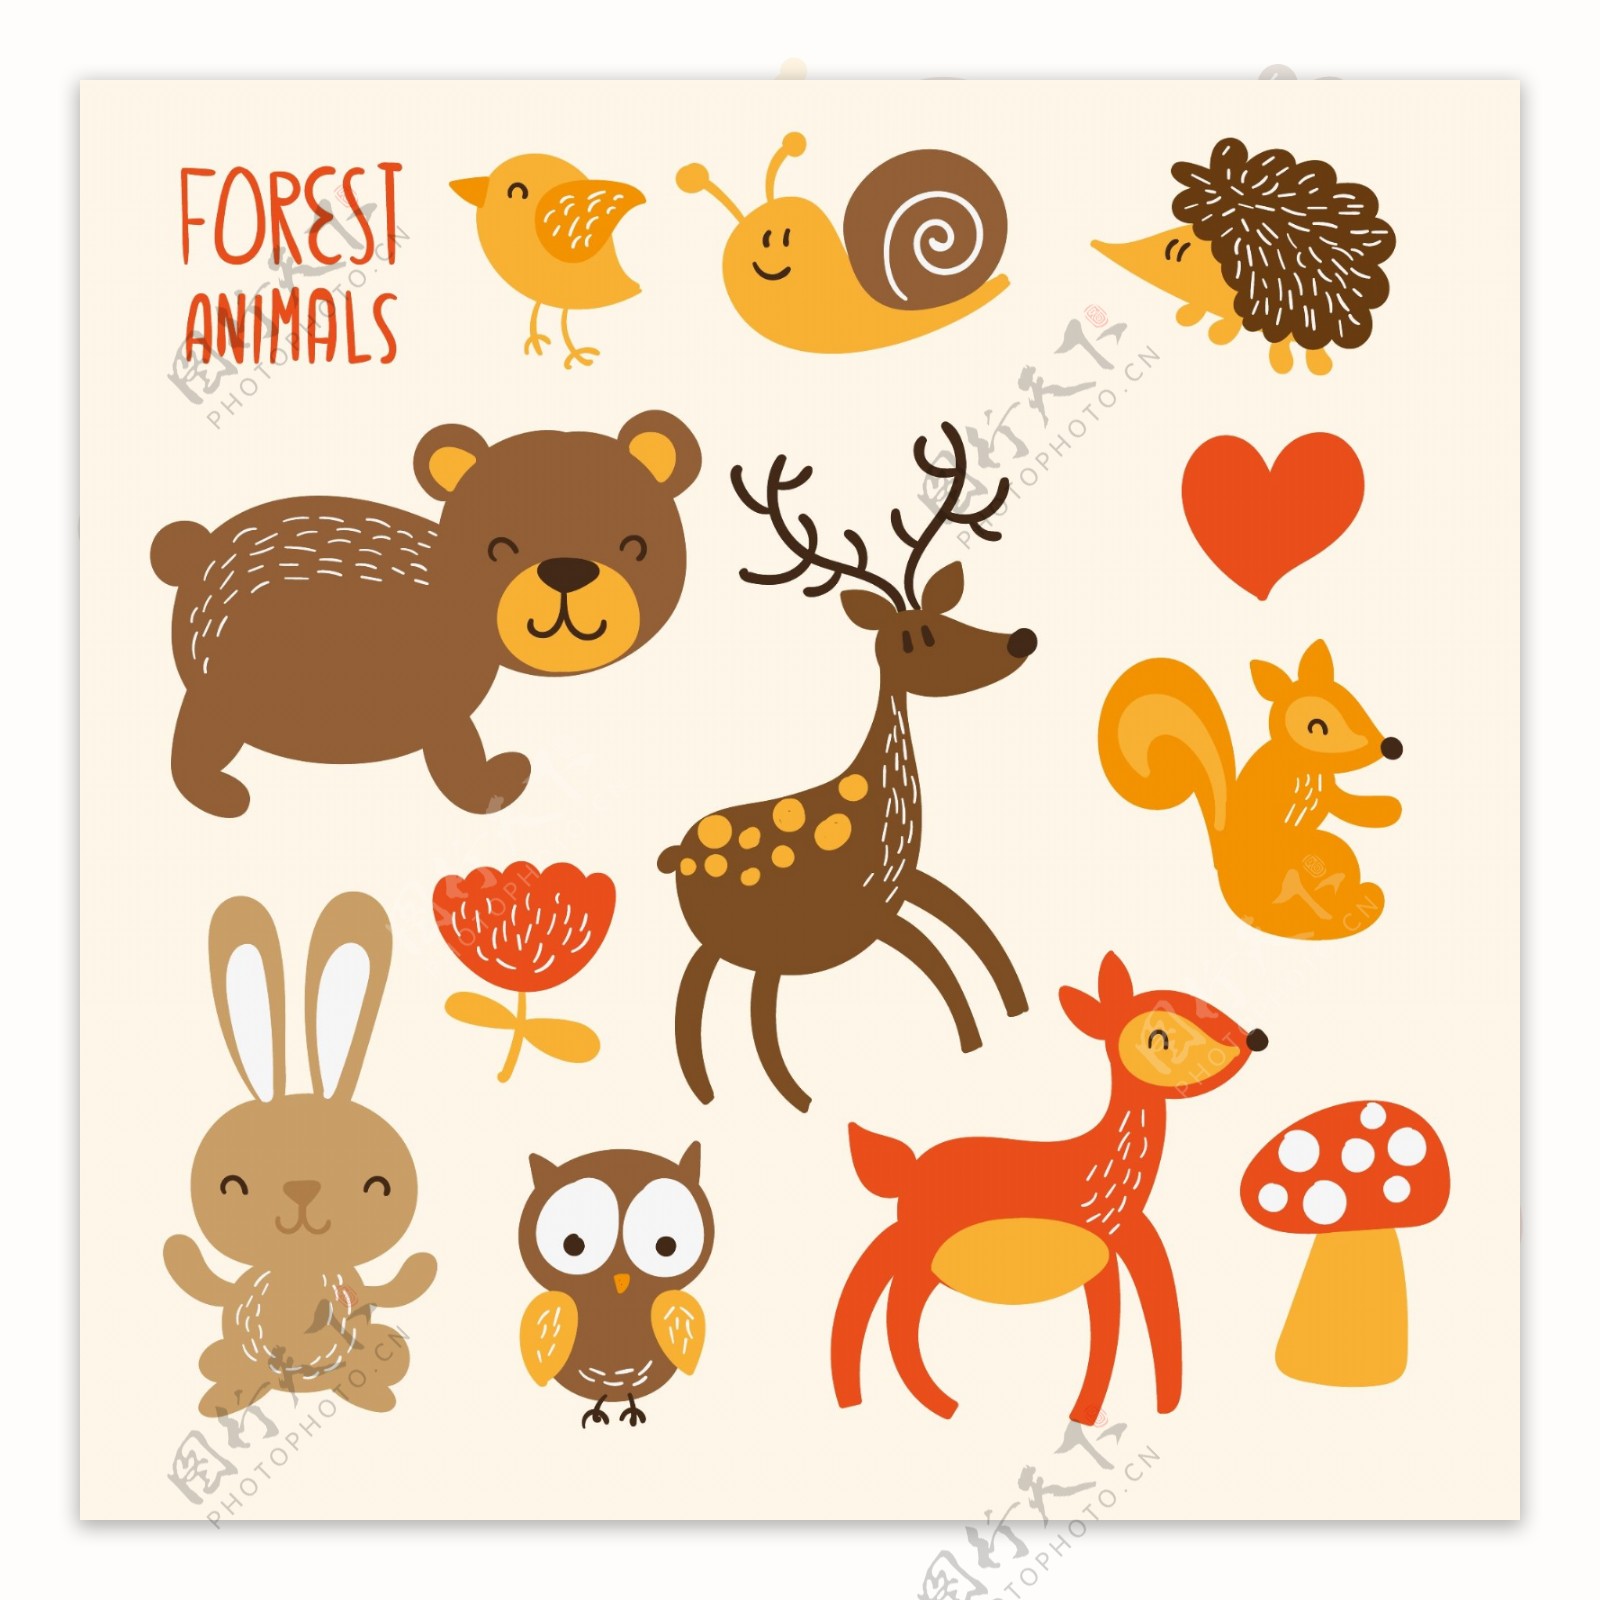 可爱的森林动物图片